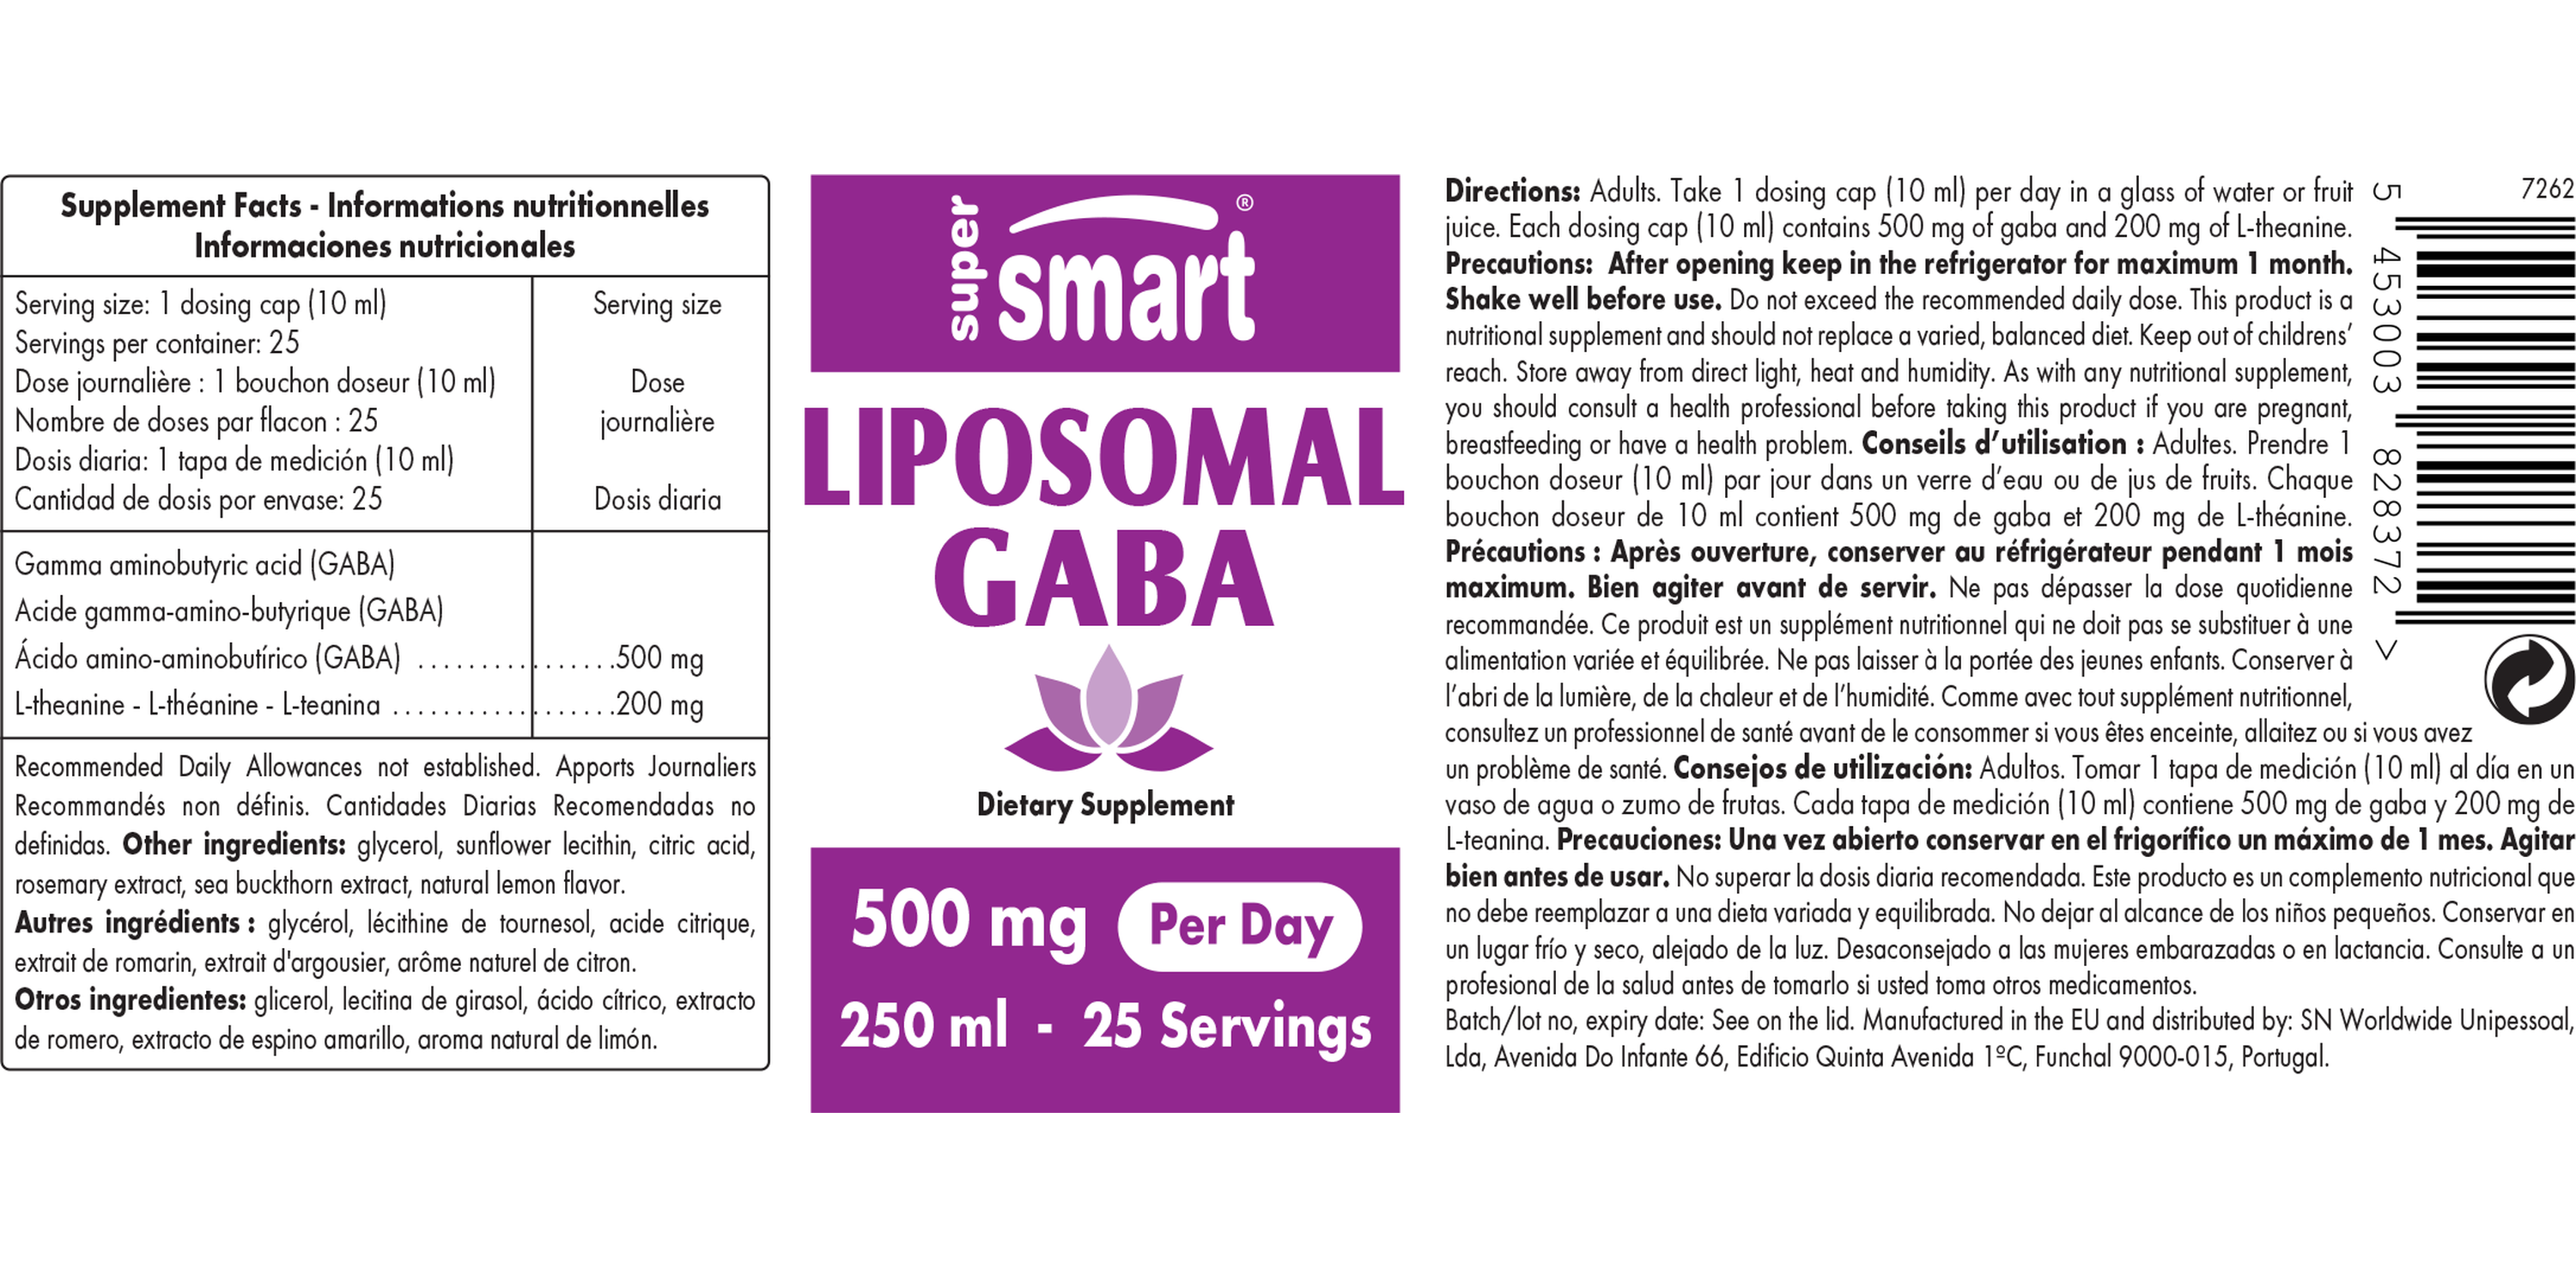 Complemento de GABA liposomal con L-teanina